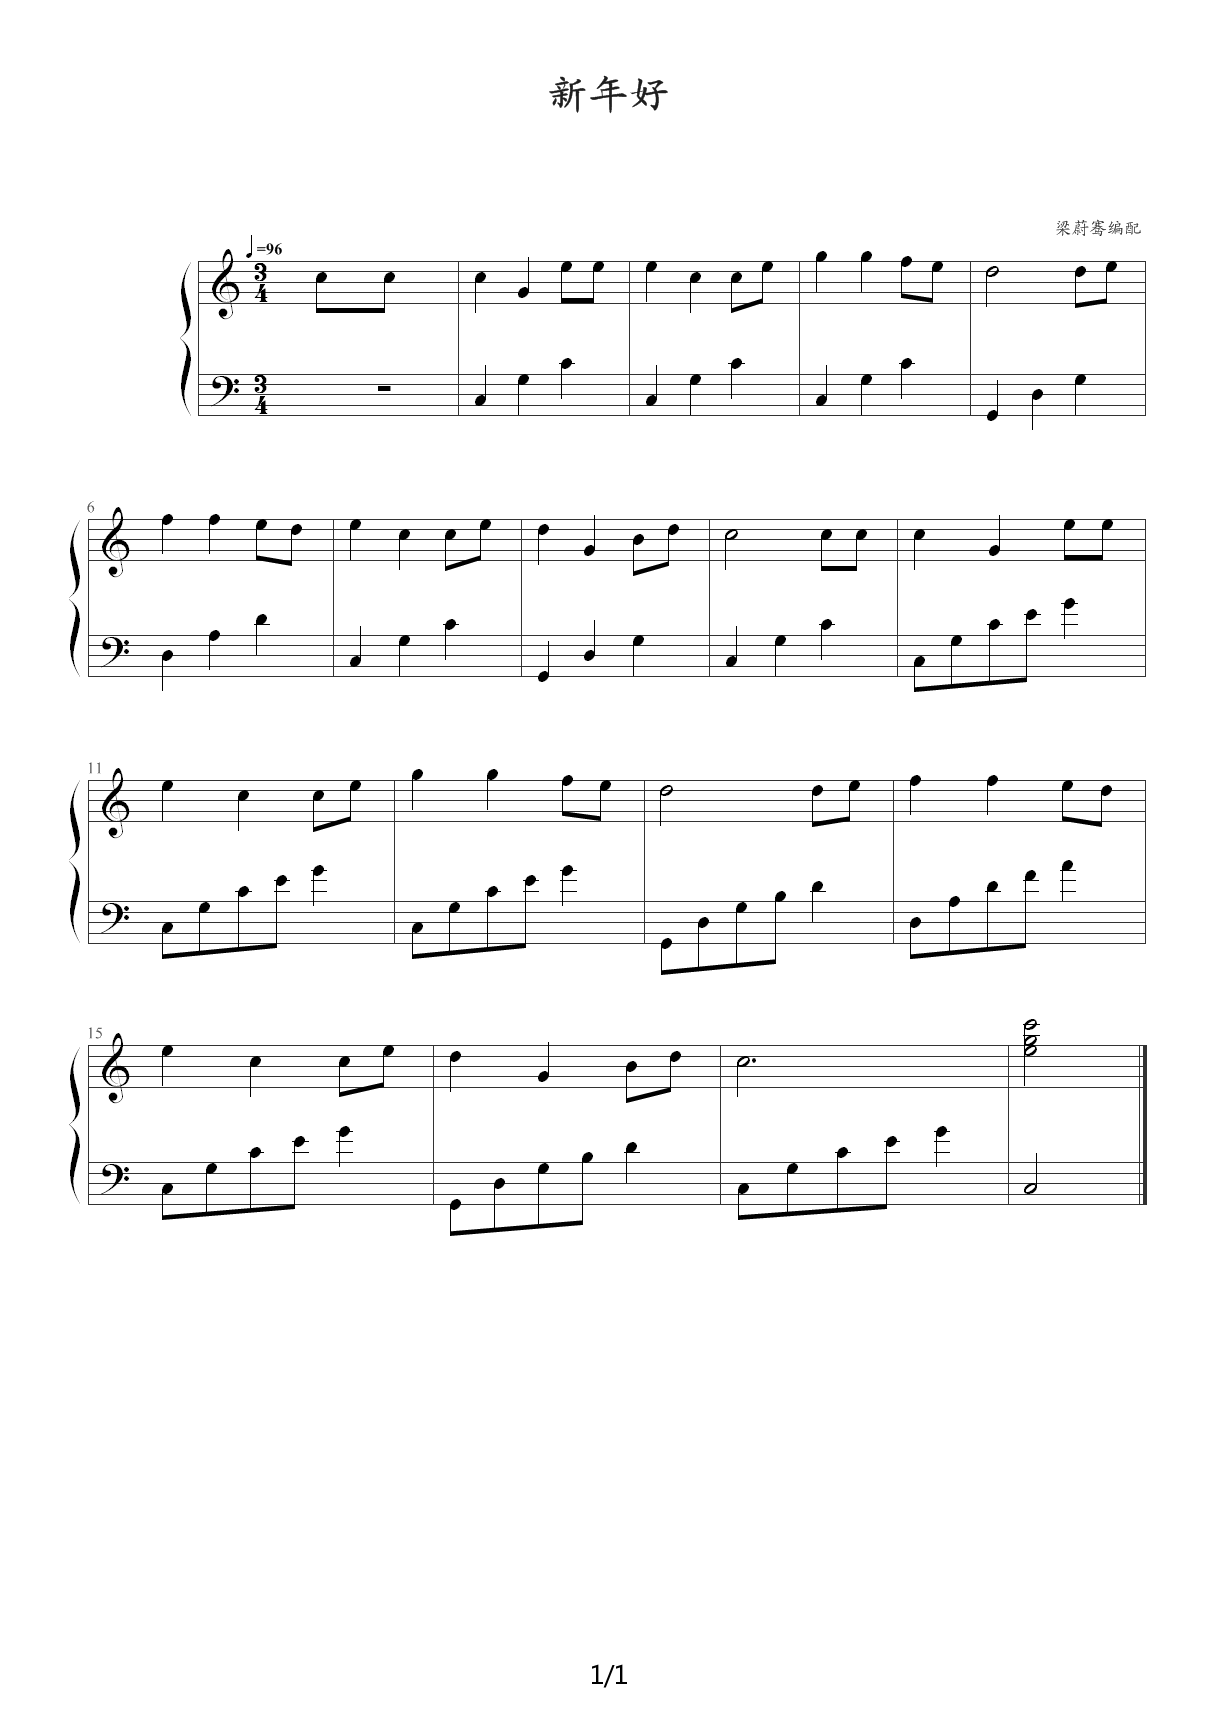 《新年好》简单钢琴谱 - 贝乐虎左手右手慢速版 - 简易入门版 - 钢琴简谱